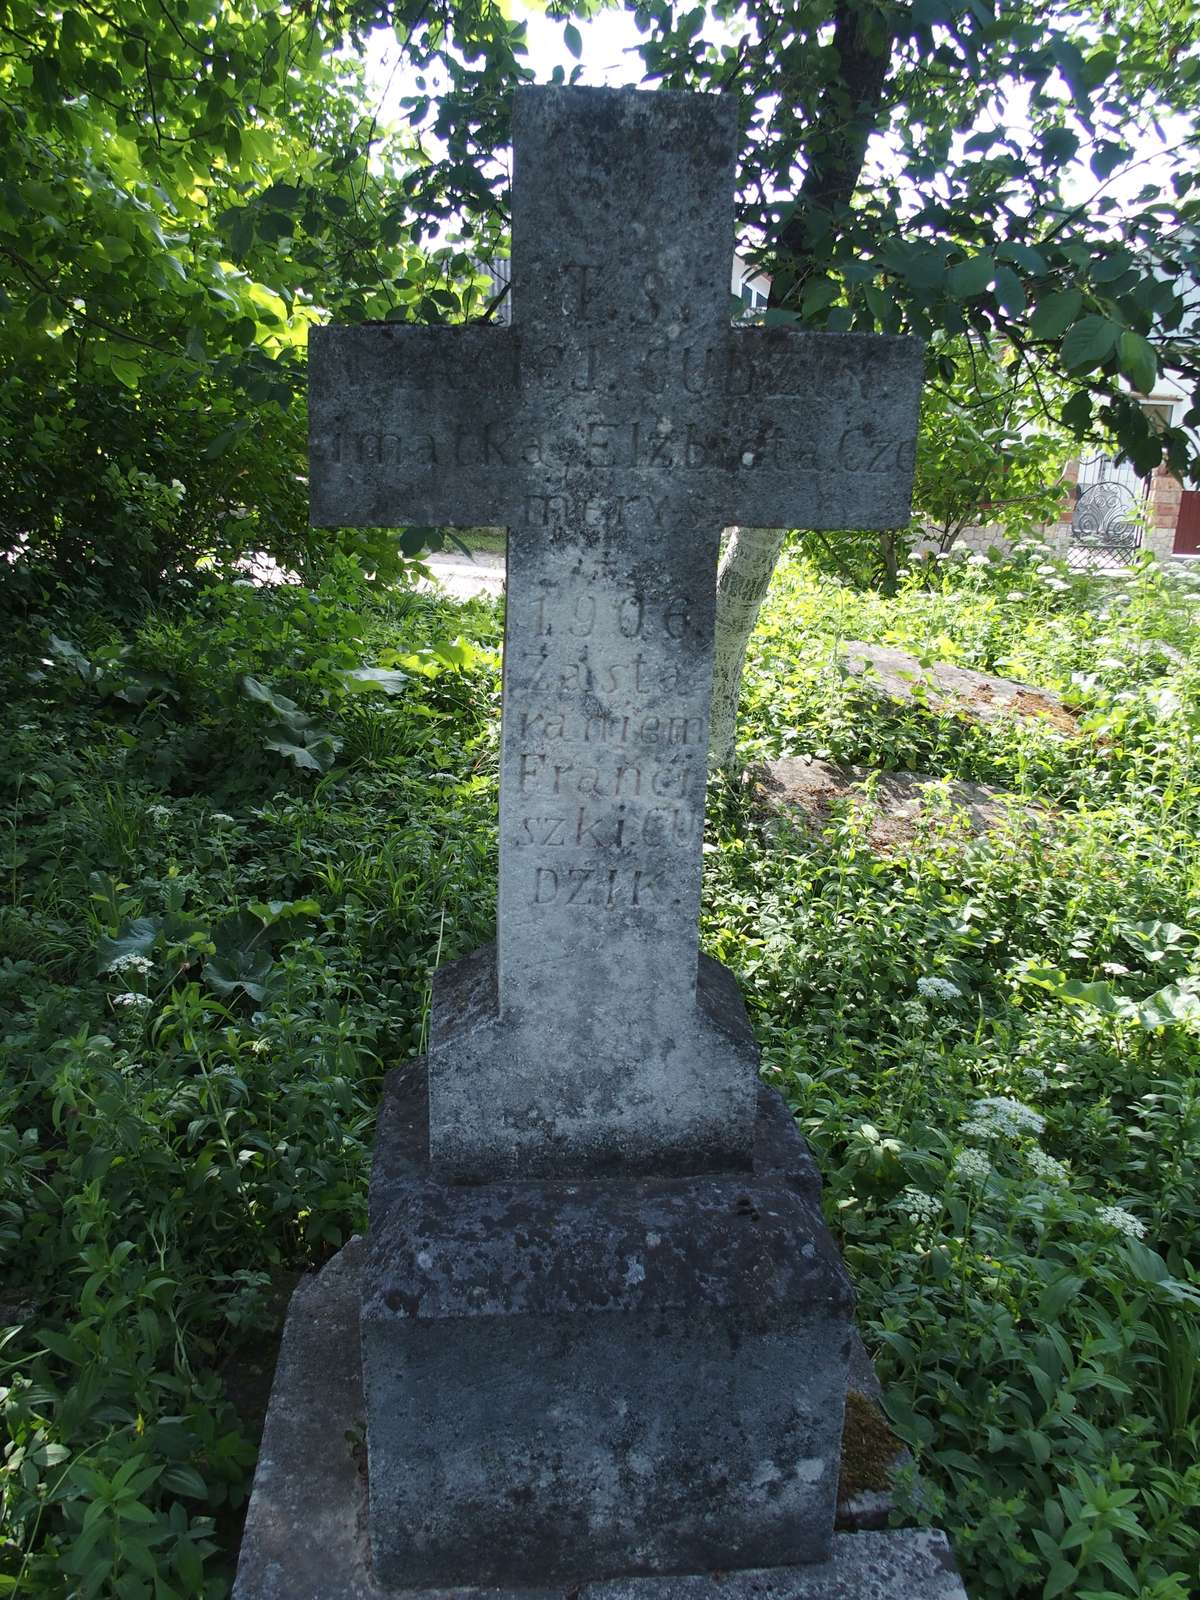 Tombstone of Maciej Cudzik and Elzbieta Czemerys, finial, zbaraska cemetery, pre-2018 condition